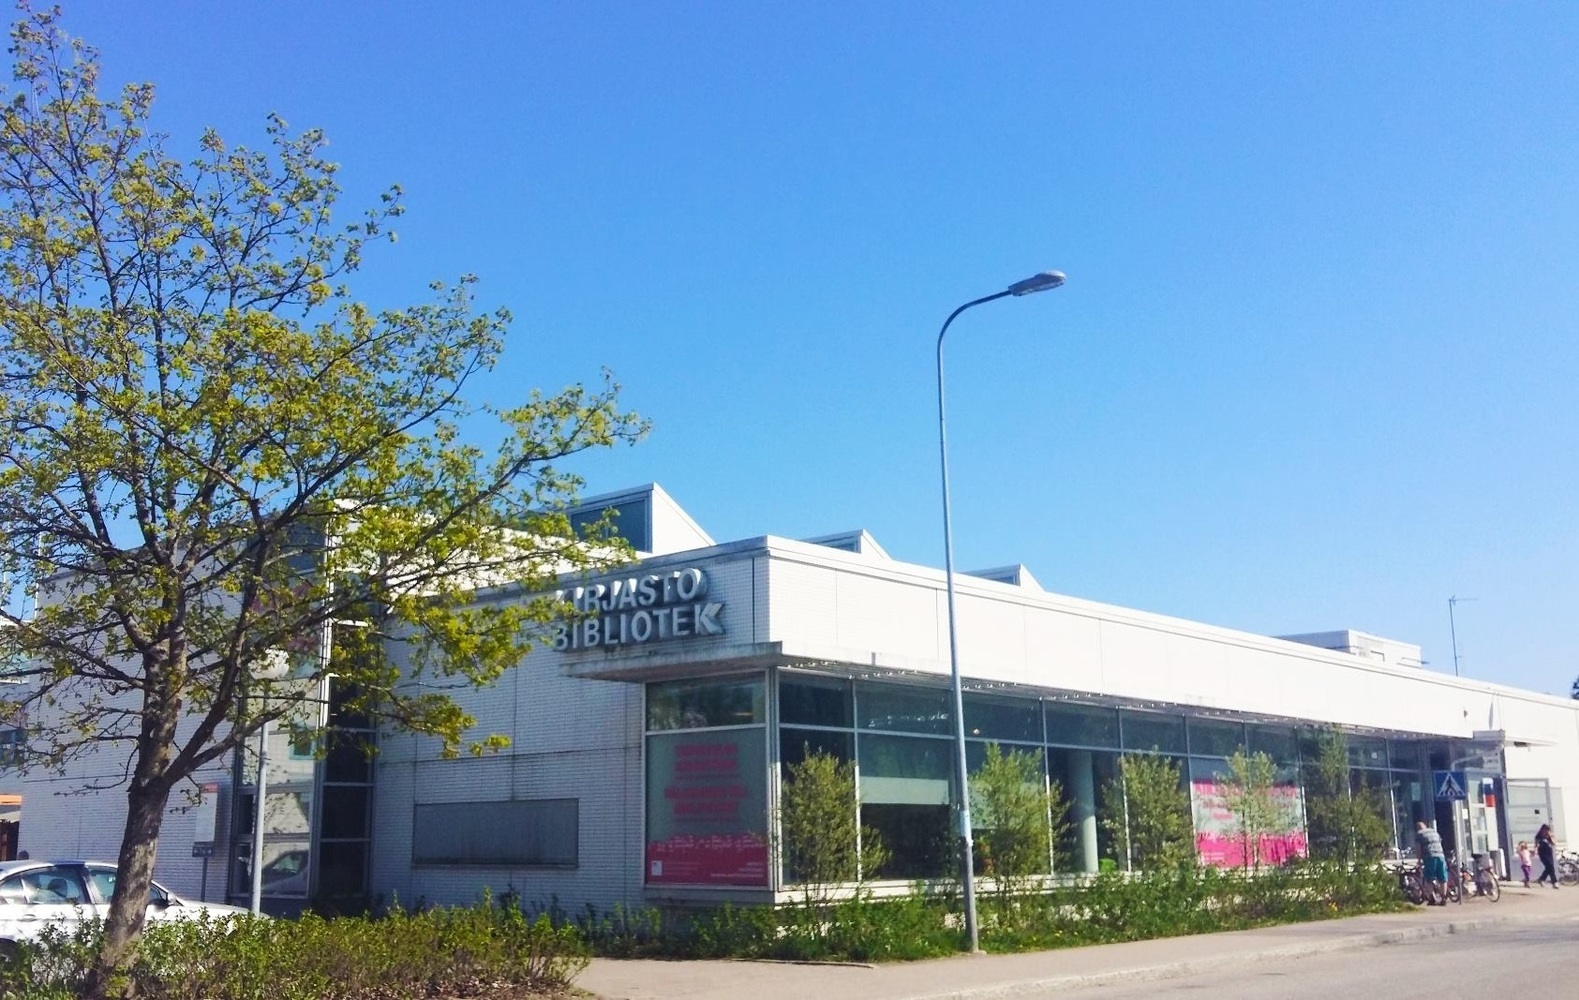 Oulunkylä Library